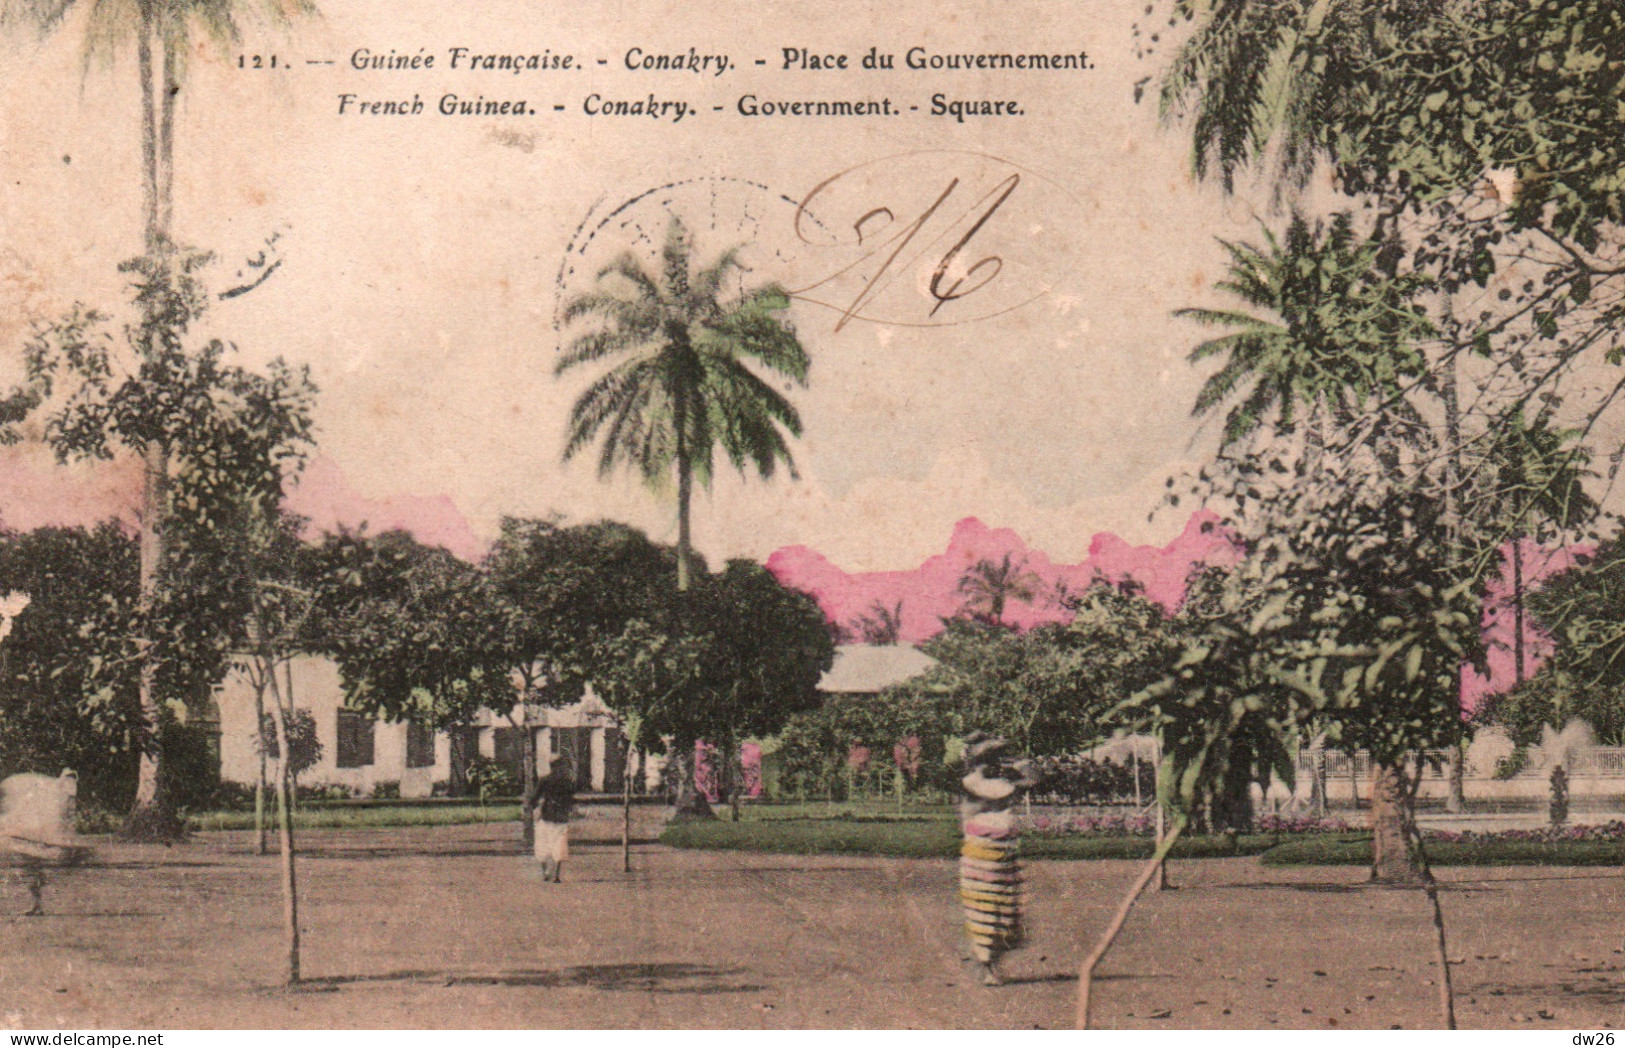 Afrique Occidentale - Guinée Française - Conakry, La Place Du Gouvernement, Square - Carte Colorisée N° 121 - Guinée Française